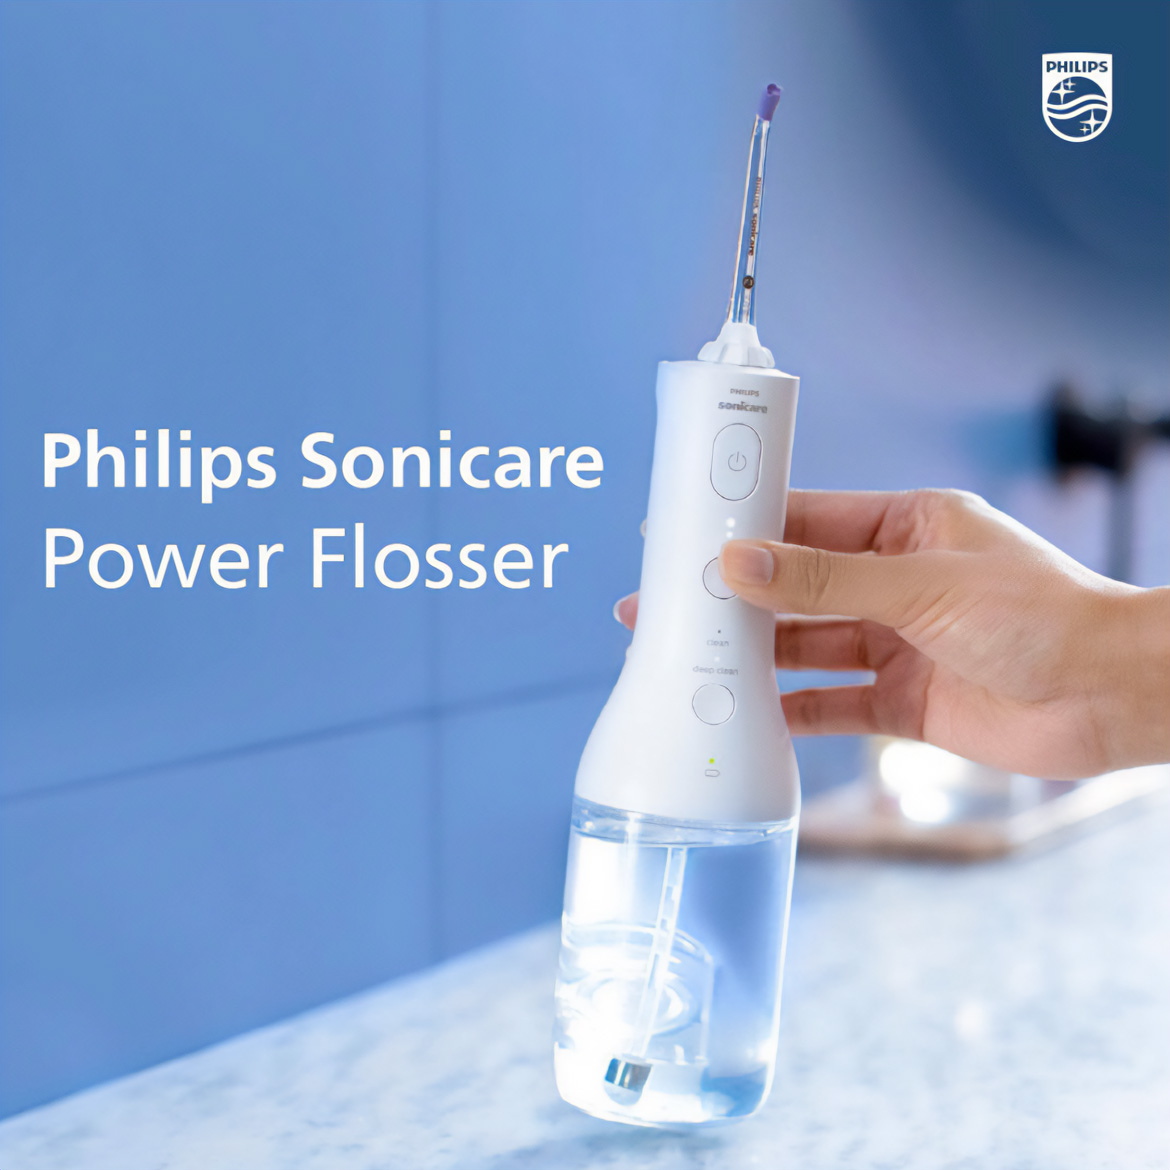 Philips-sonicare-power-flosser-3000-social-1-2